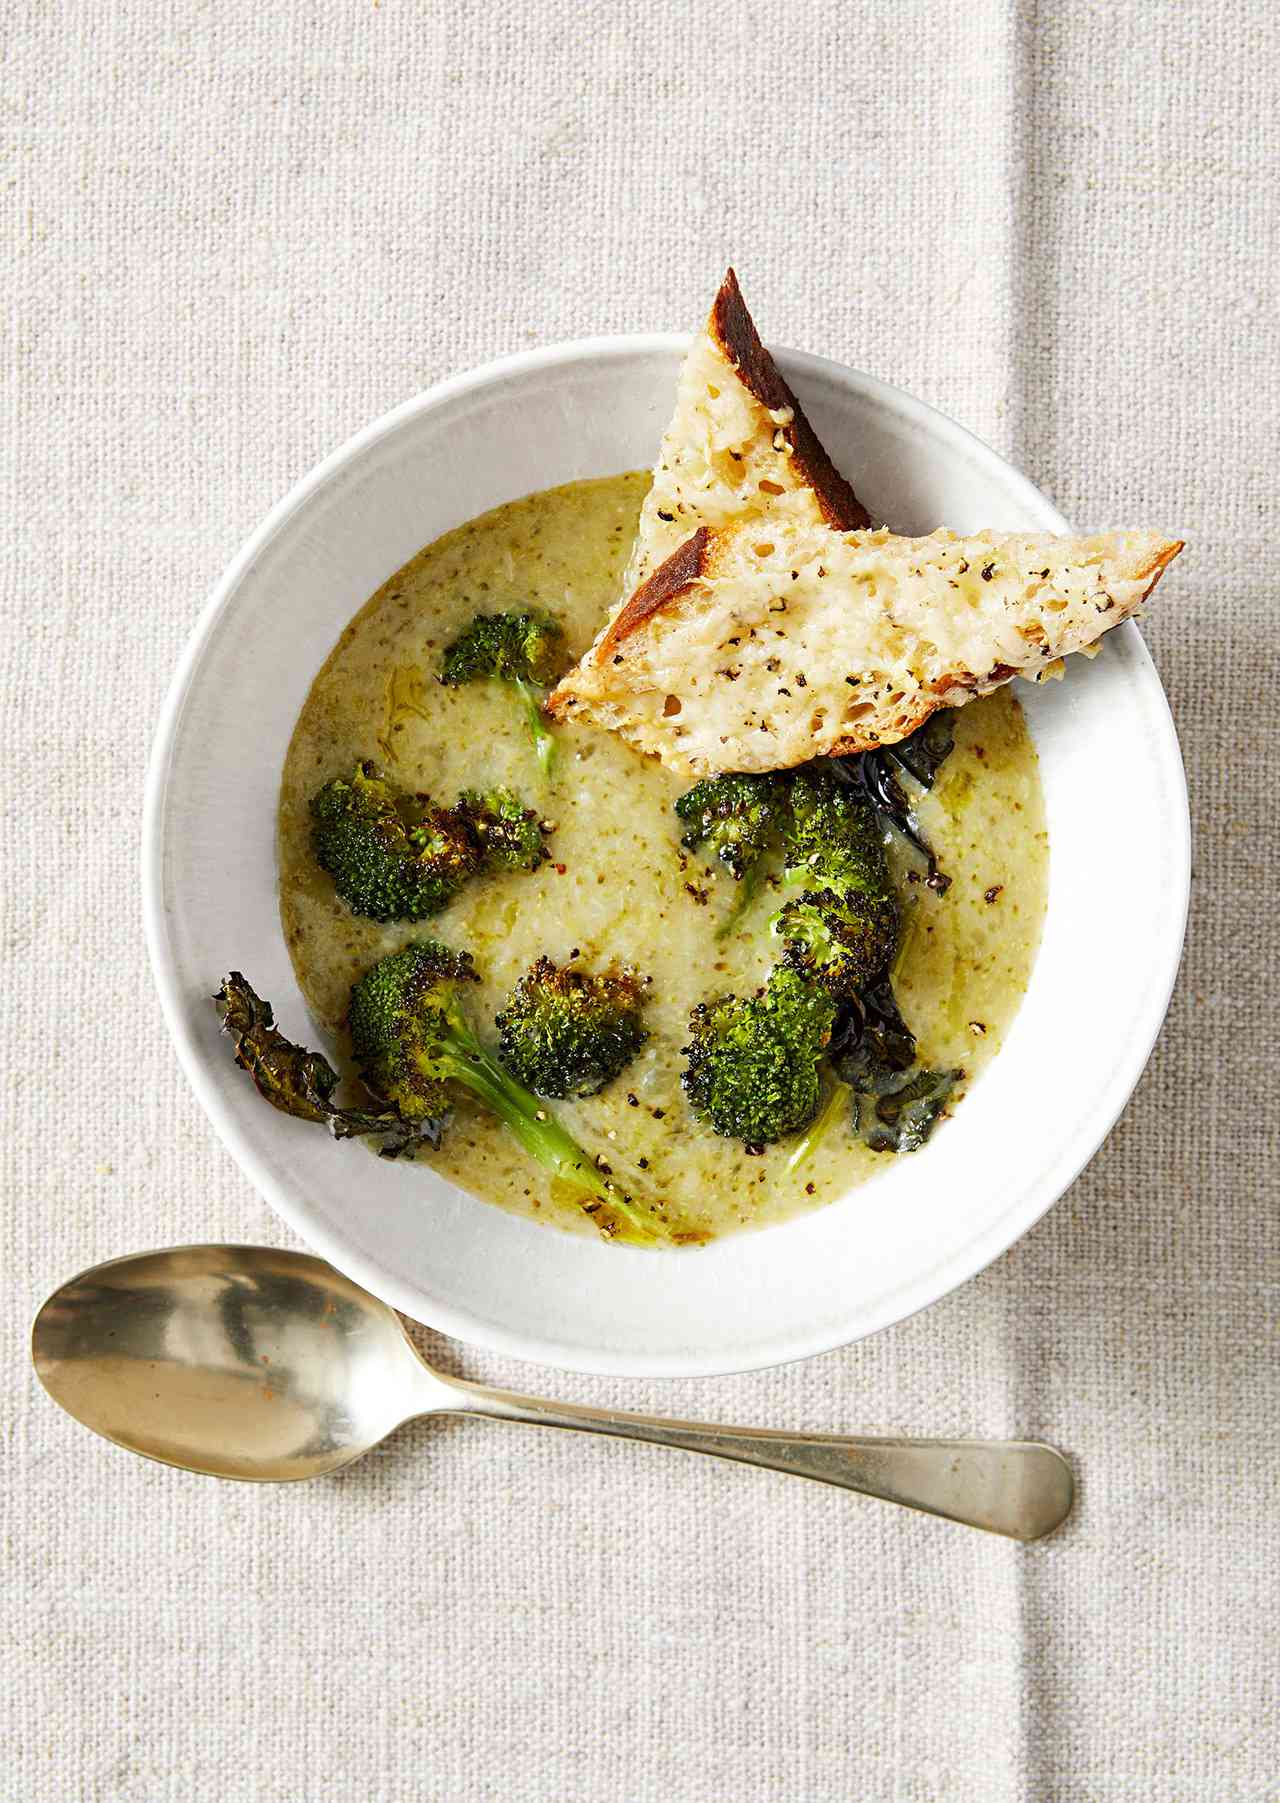 Potato, Broccoli, and Cheddar Soup